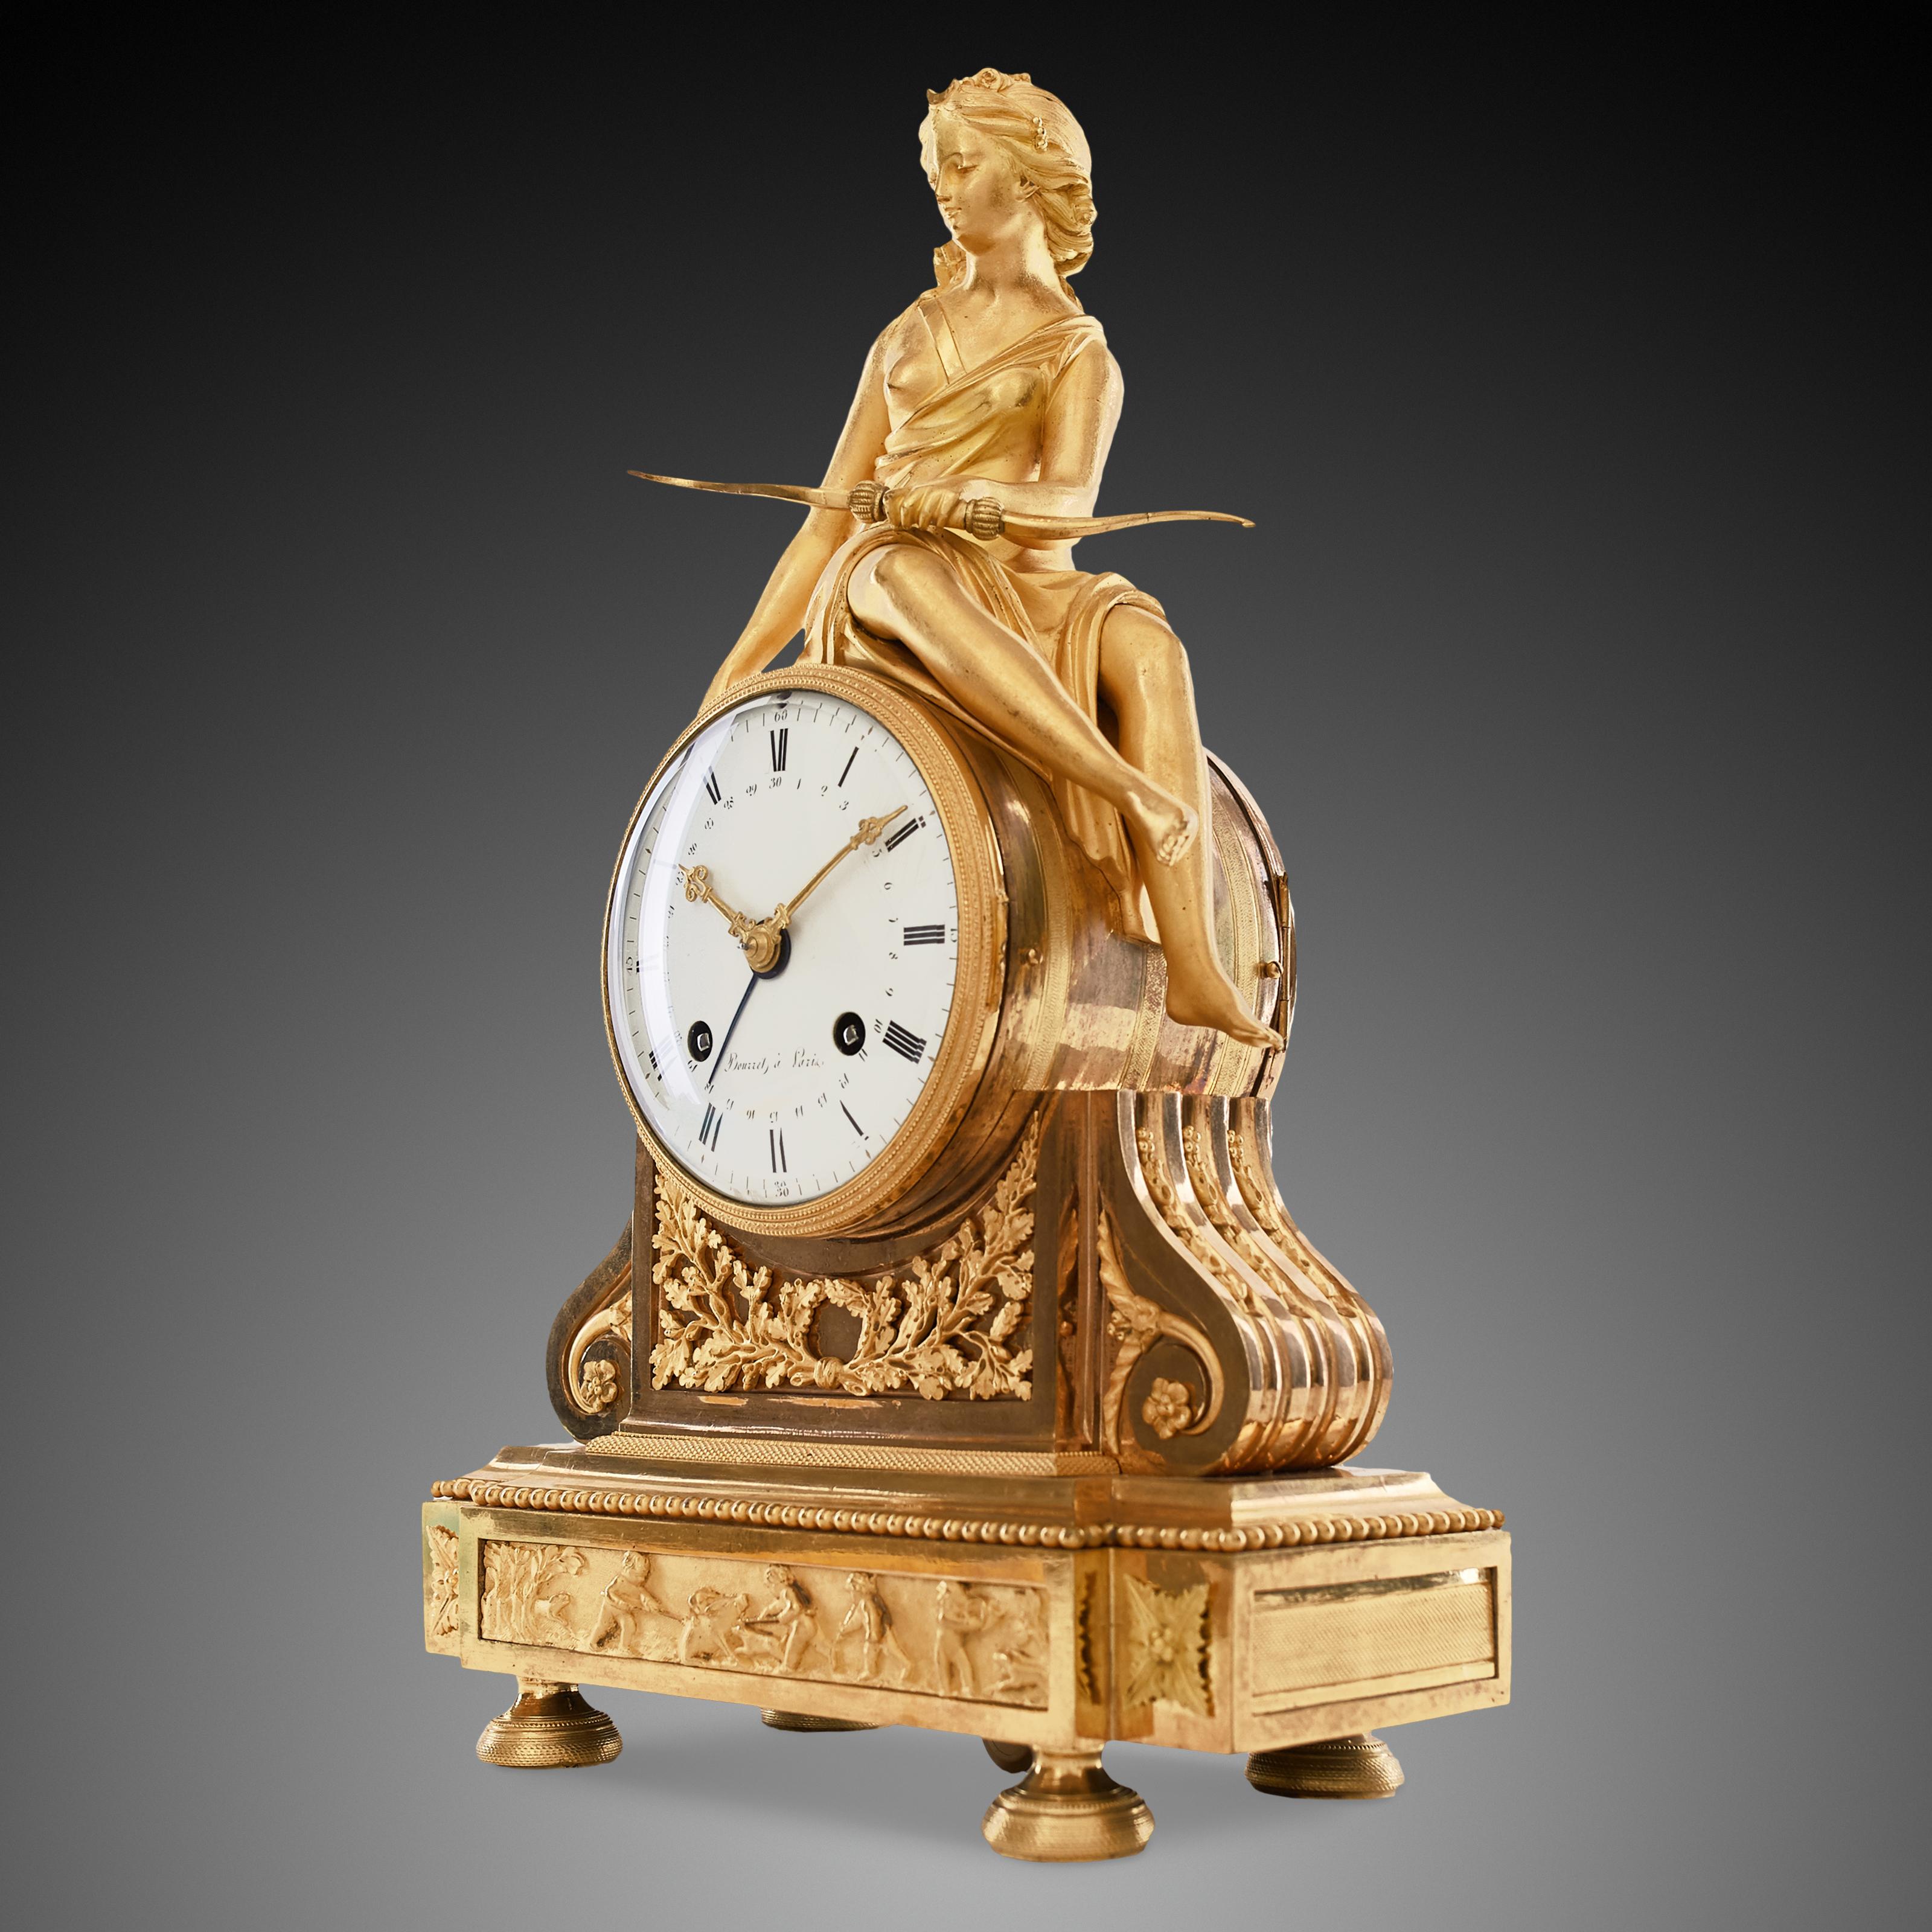 La pendule de cheminée, en ormol (bronze doré), représente la belle figure de Diane, déesse romaine de la chasse, accompagnée de divers emblèmes. Diana est assise sur l'enveloppe circulaire de l'horloge, tenant une flèche de la main gauche et un